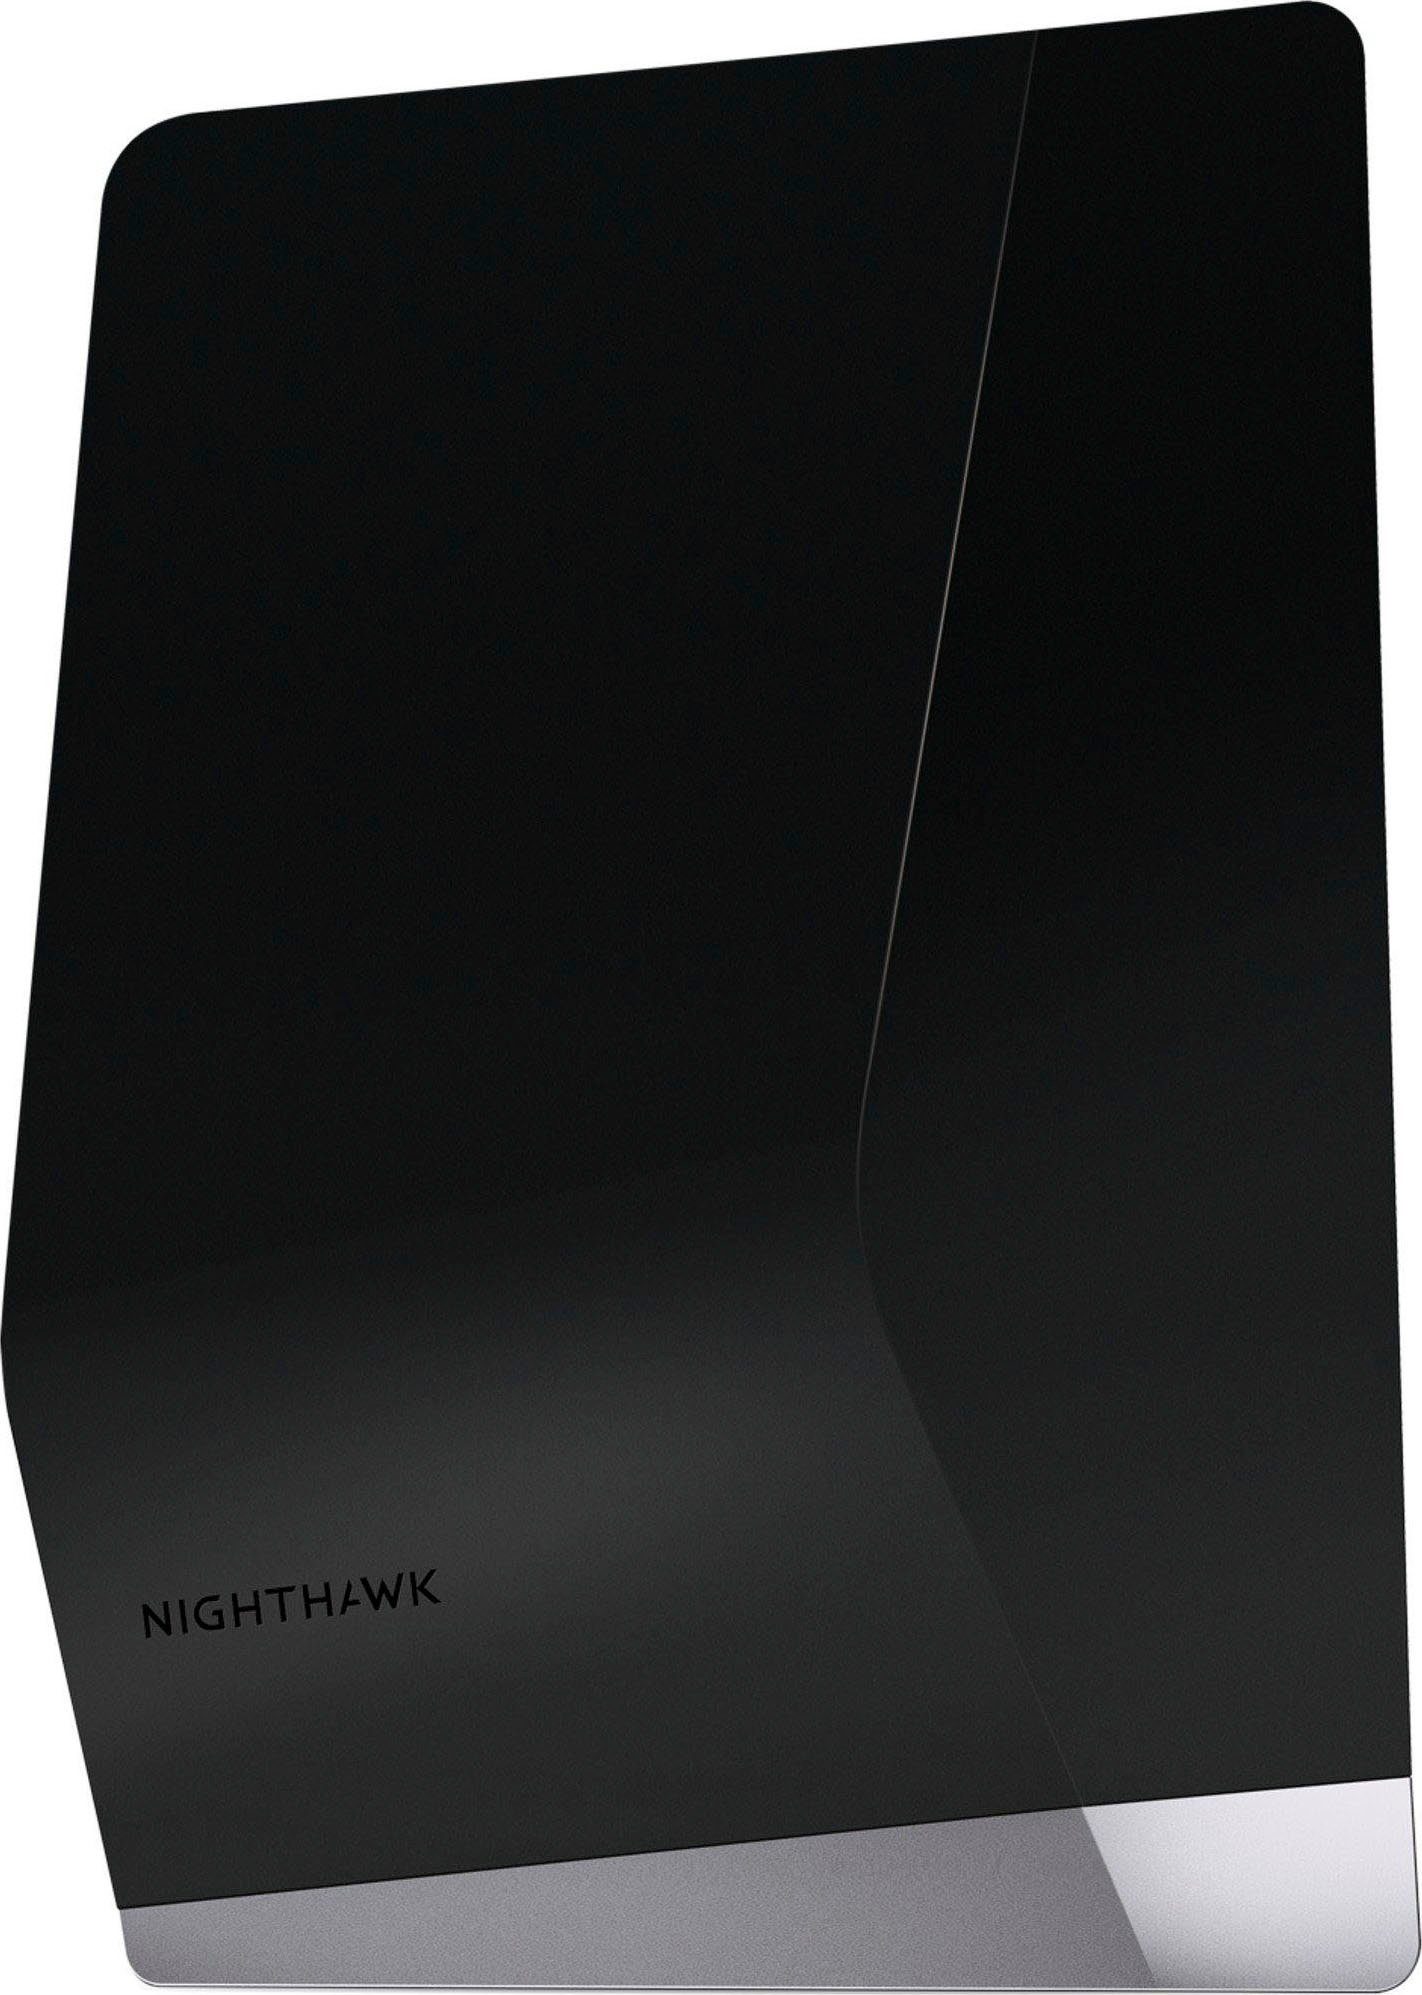 EAX80 Nighthawk WLAN-Router NETGEAR